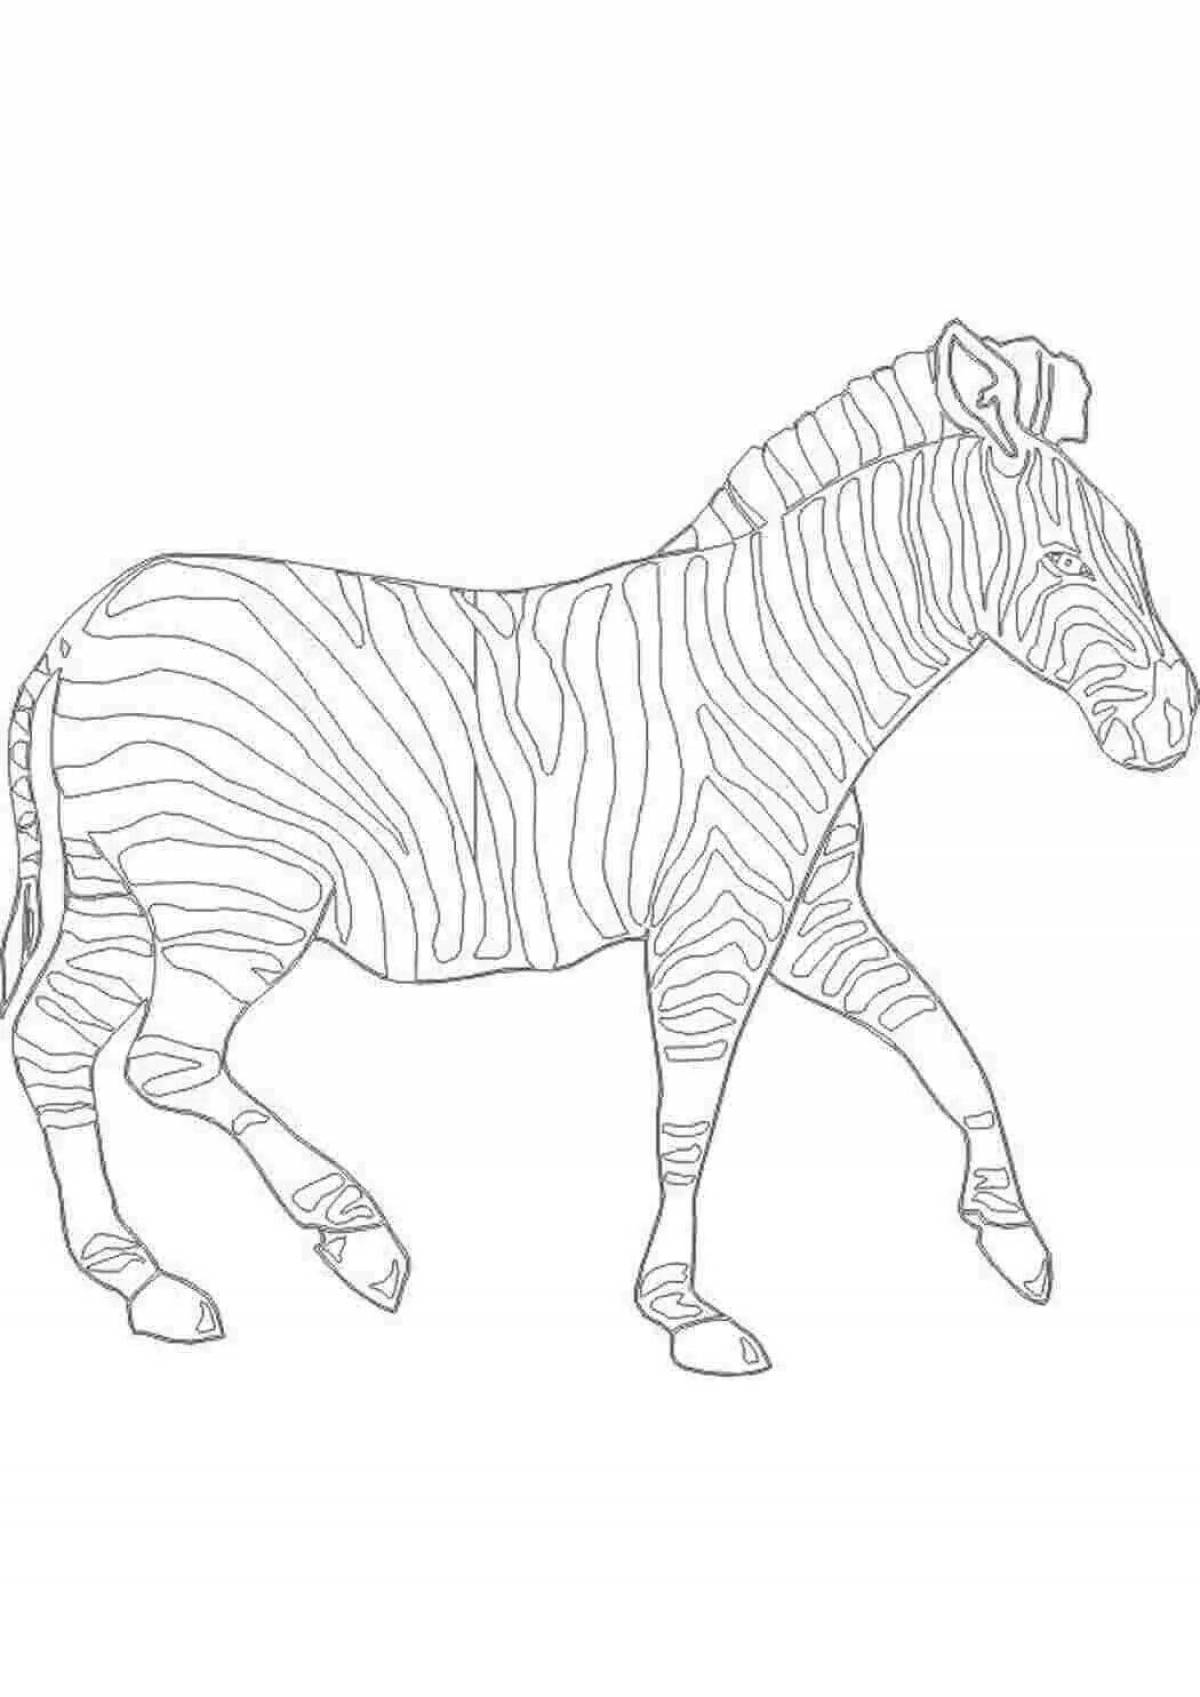 Innovative zebra coloring book for kids